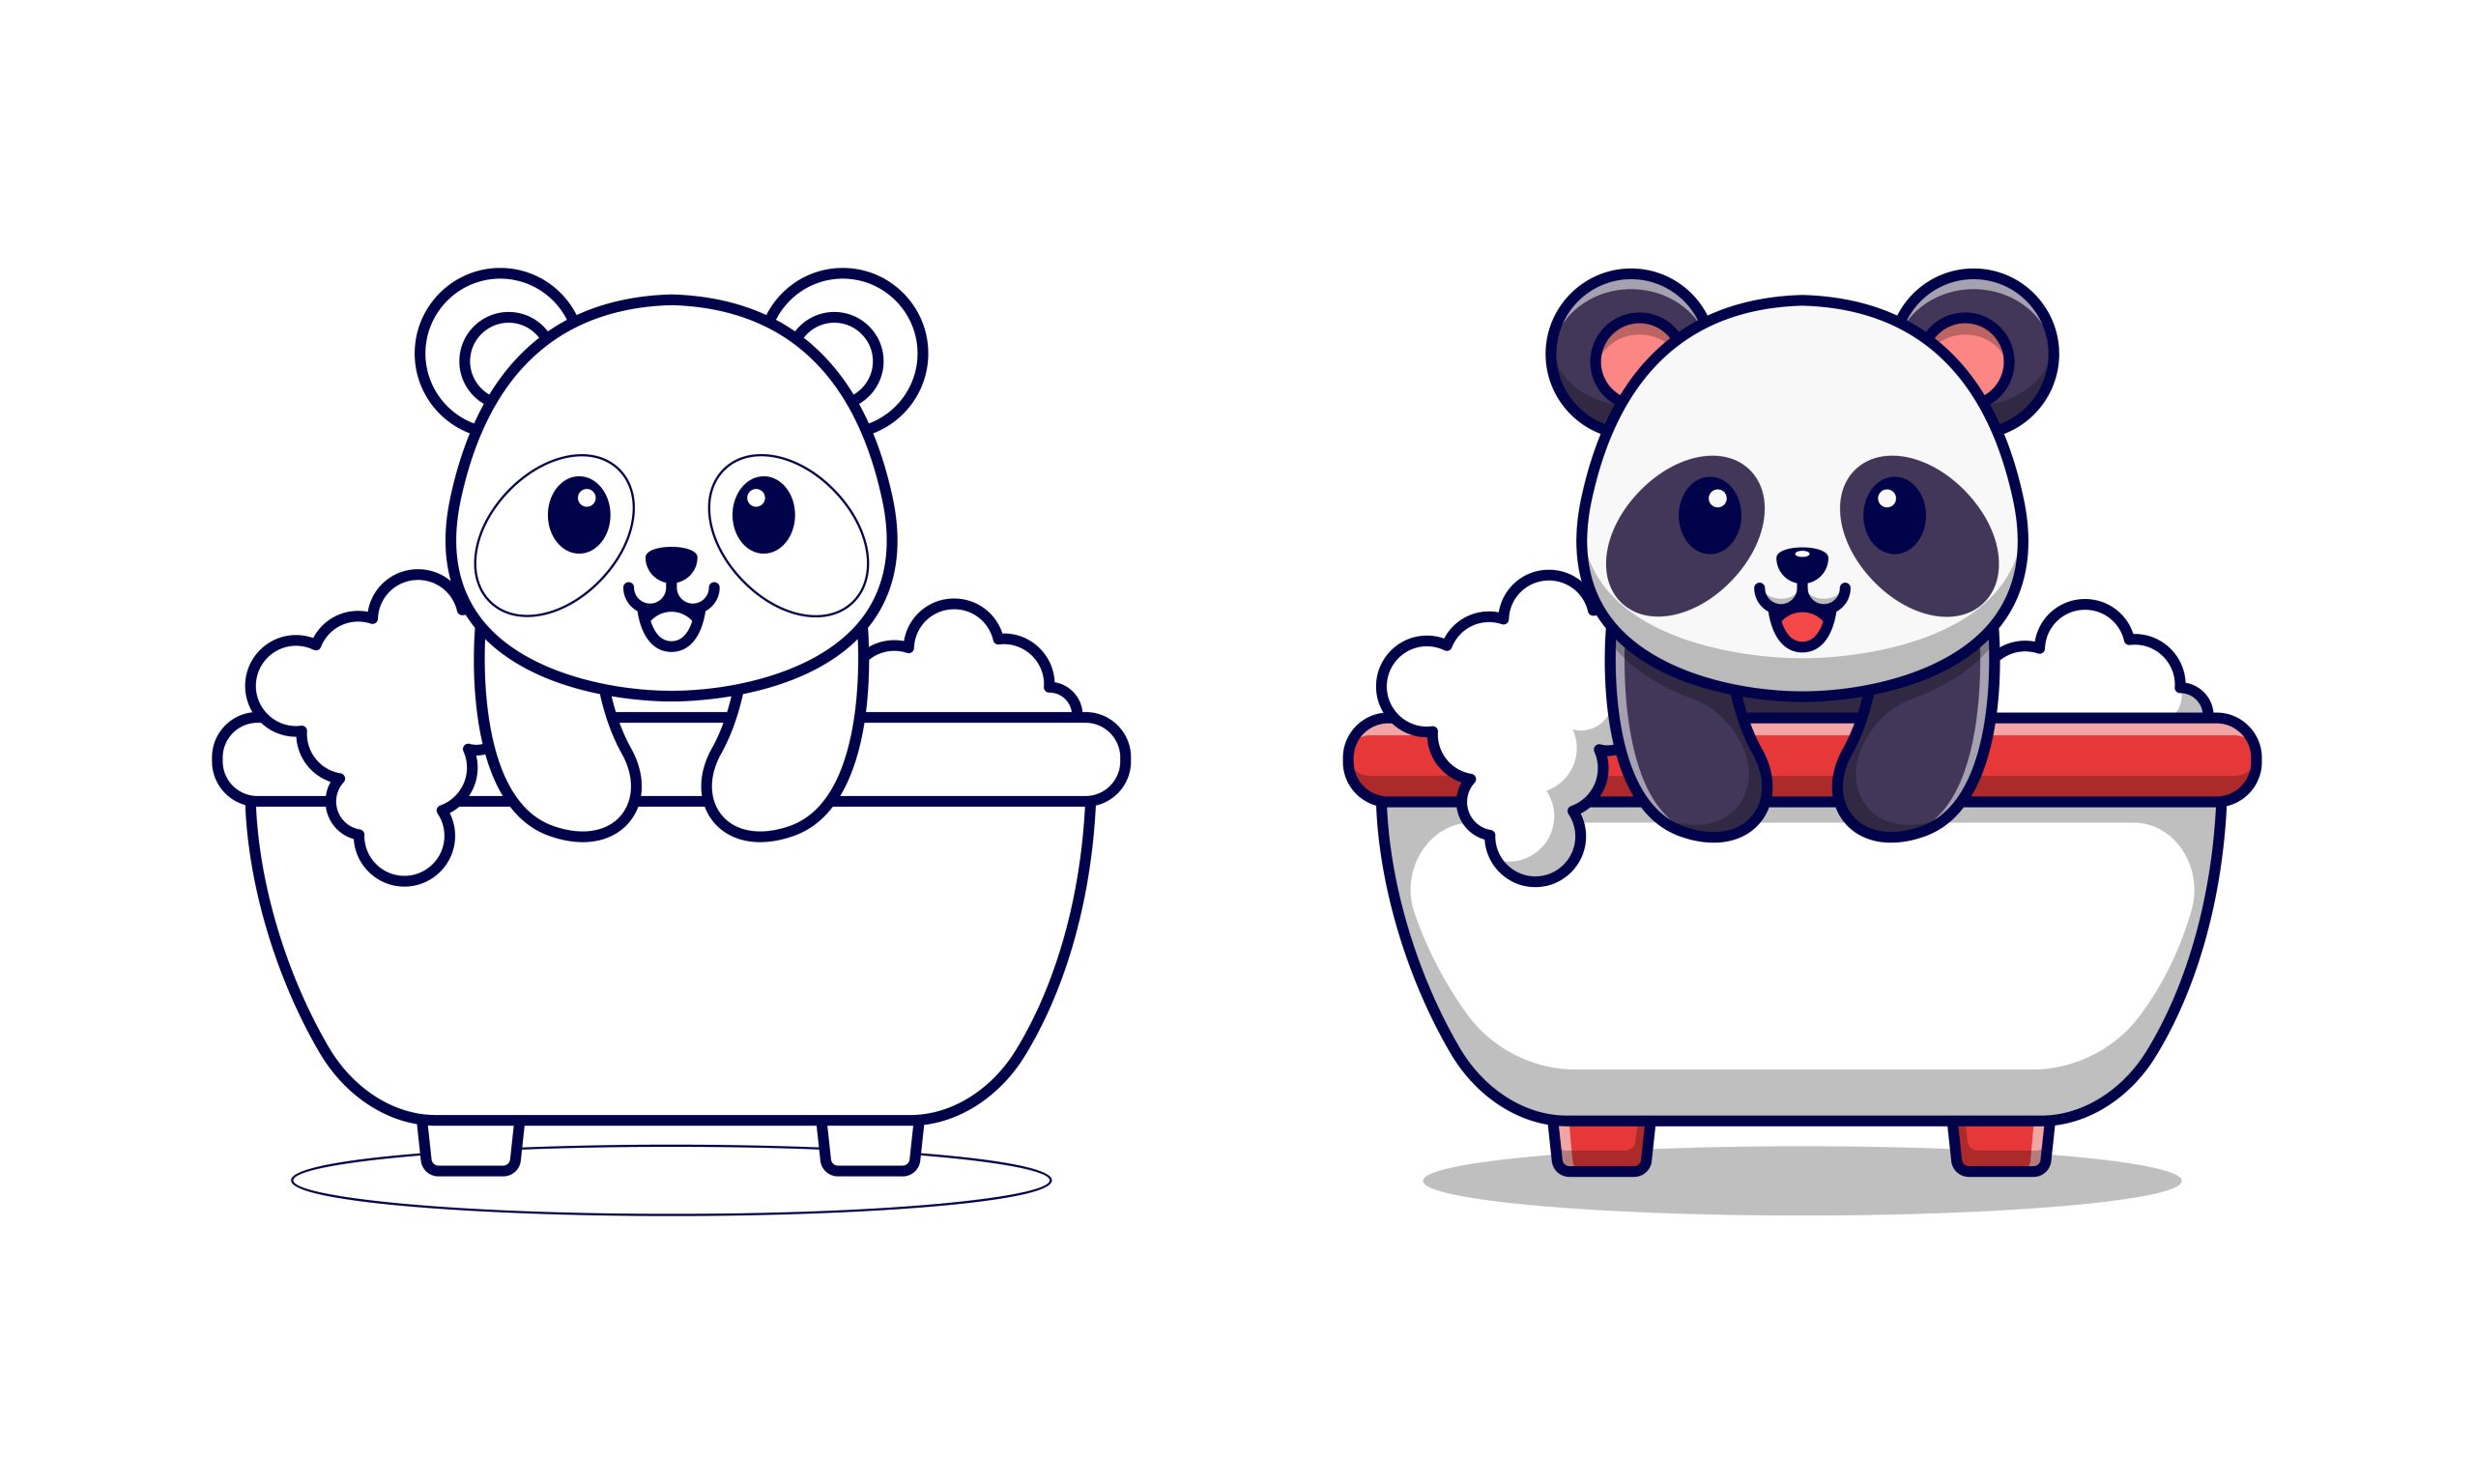 Panda-no-banho